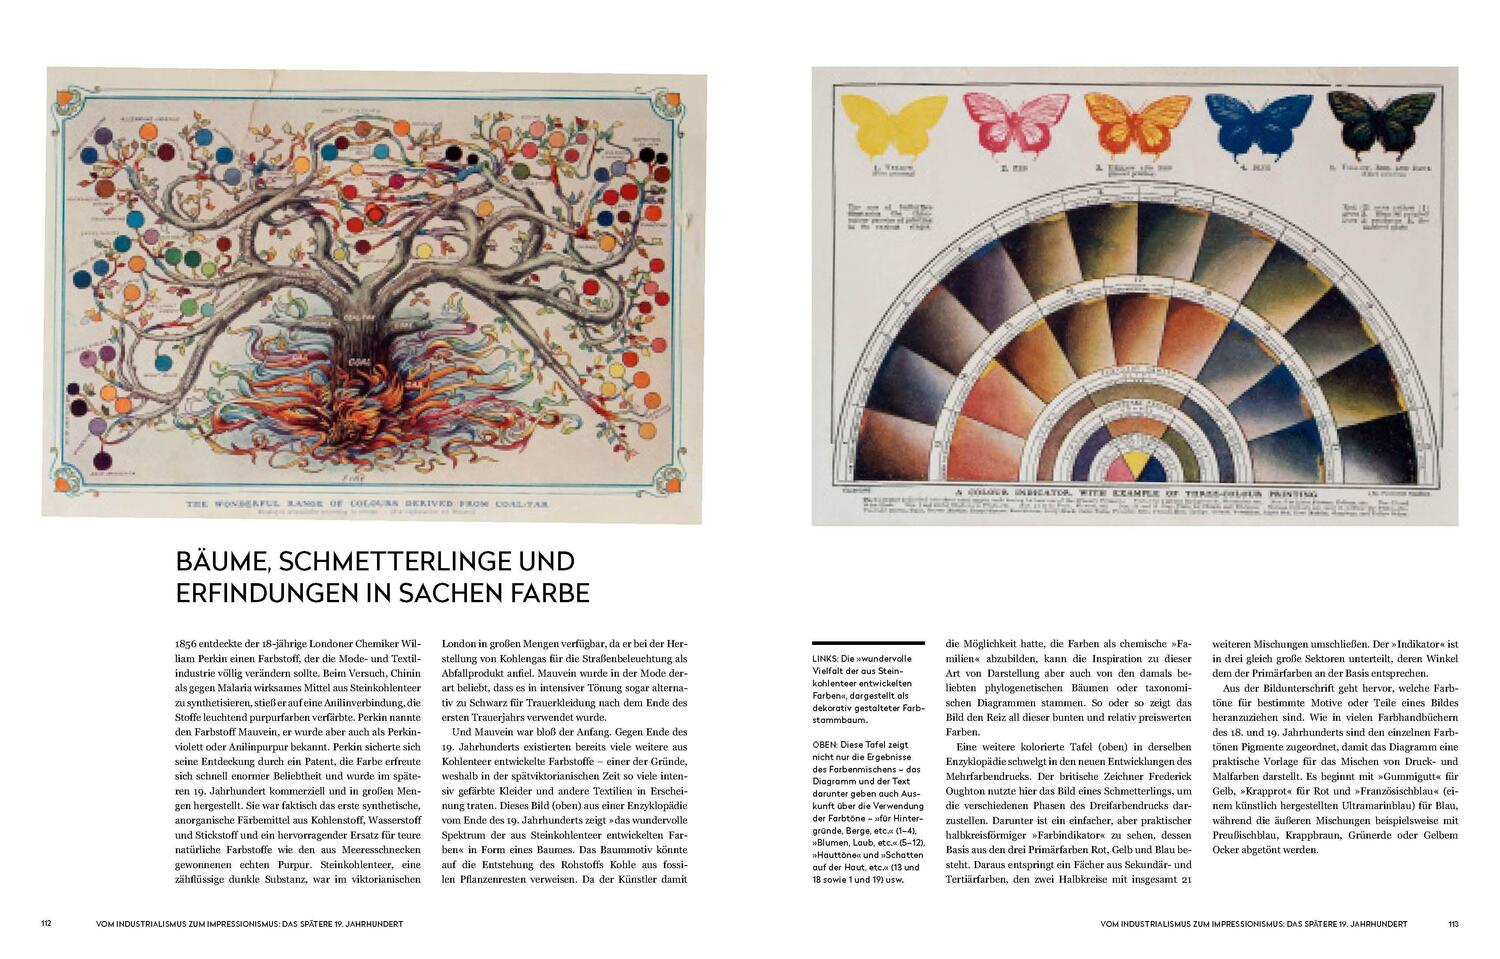 Bild: 9783791385464 | Die Geschichte der Farben | Alexandra Loske | Buch | 240 S. | Deutsch